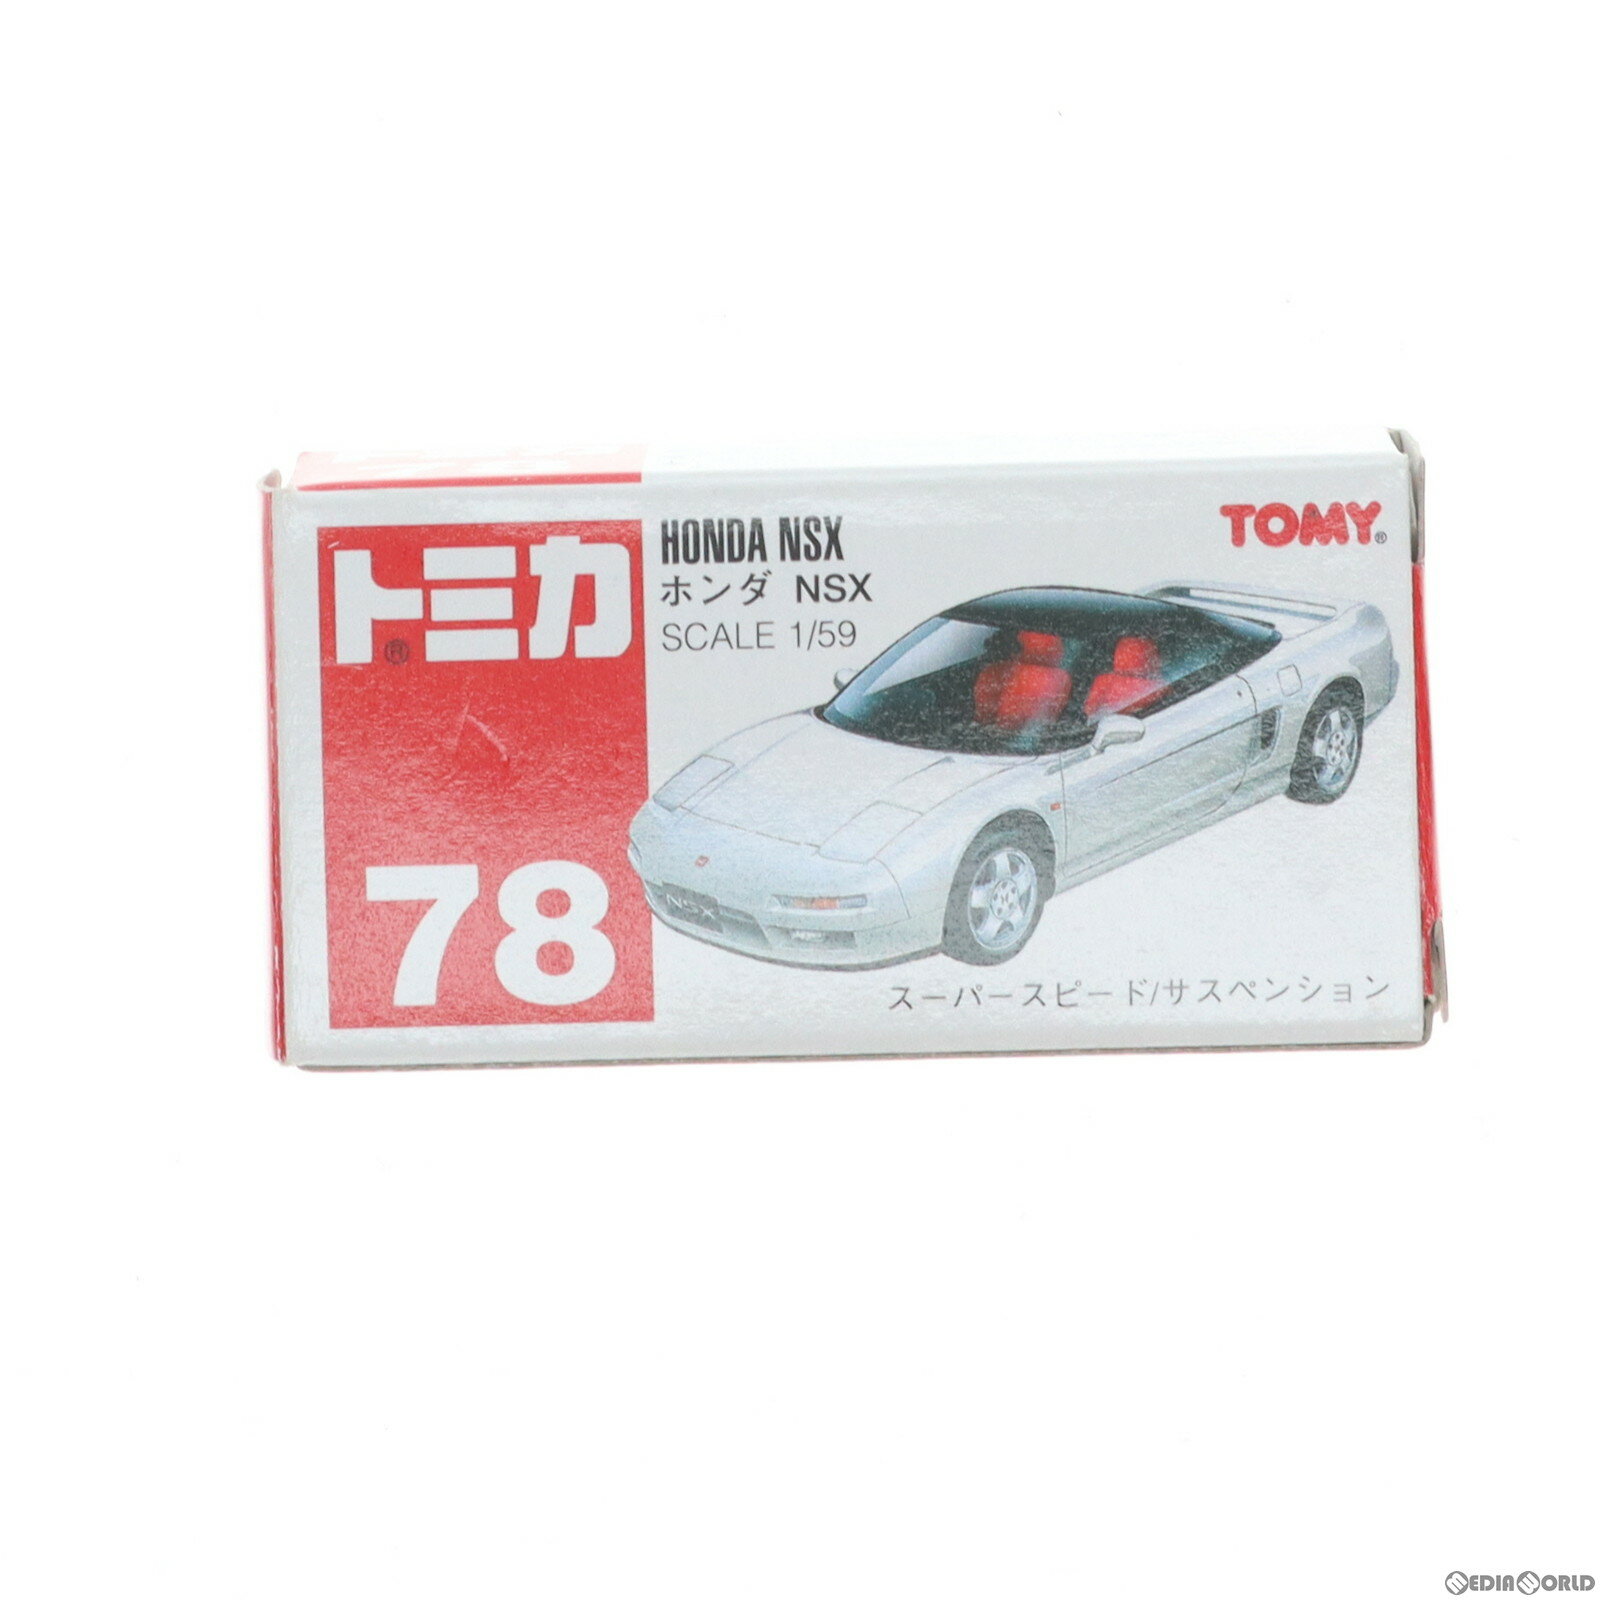 【中古】[MDL]トミカ No.78 1/59 ホンダ NSX(ホワイト/赤箱/中国製) 完成品 ミニカー トミー(19910831)